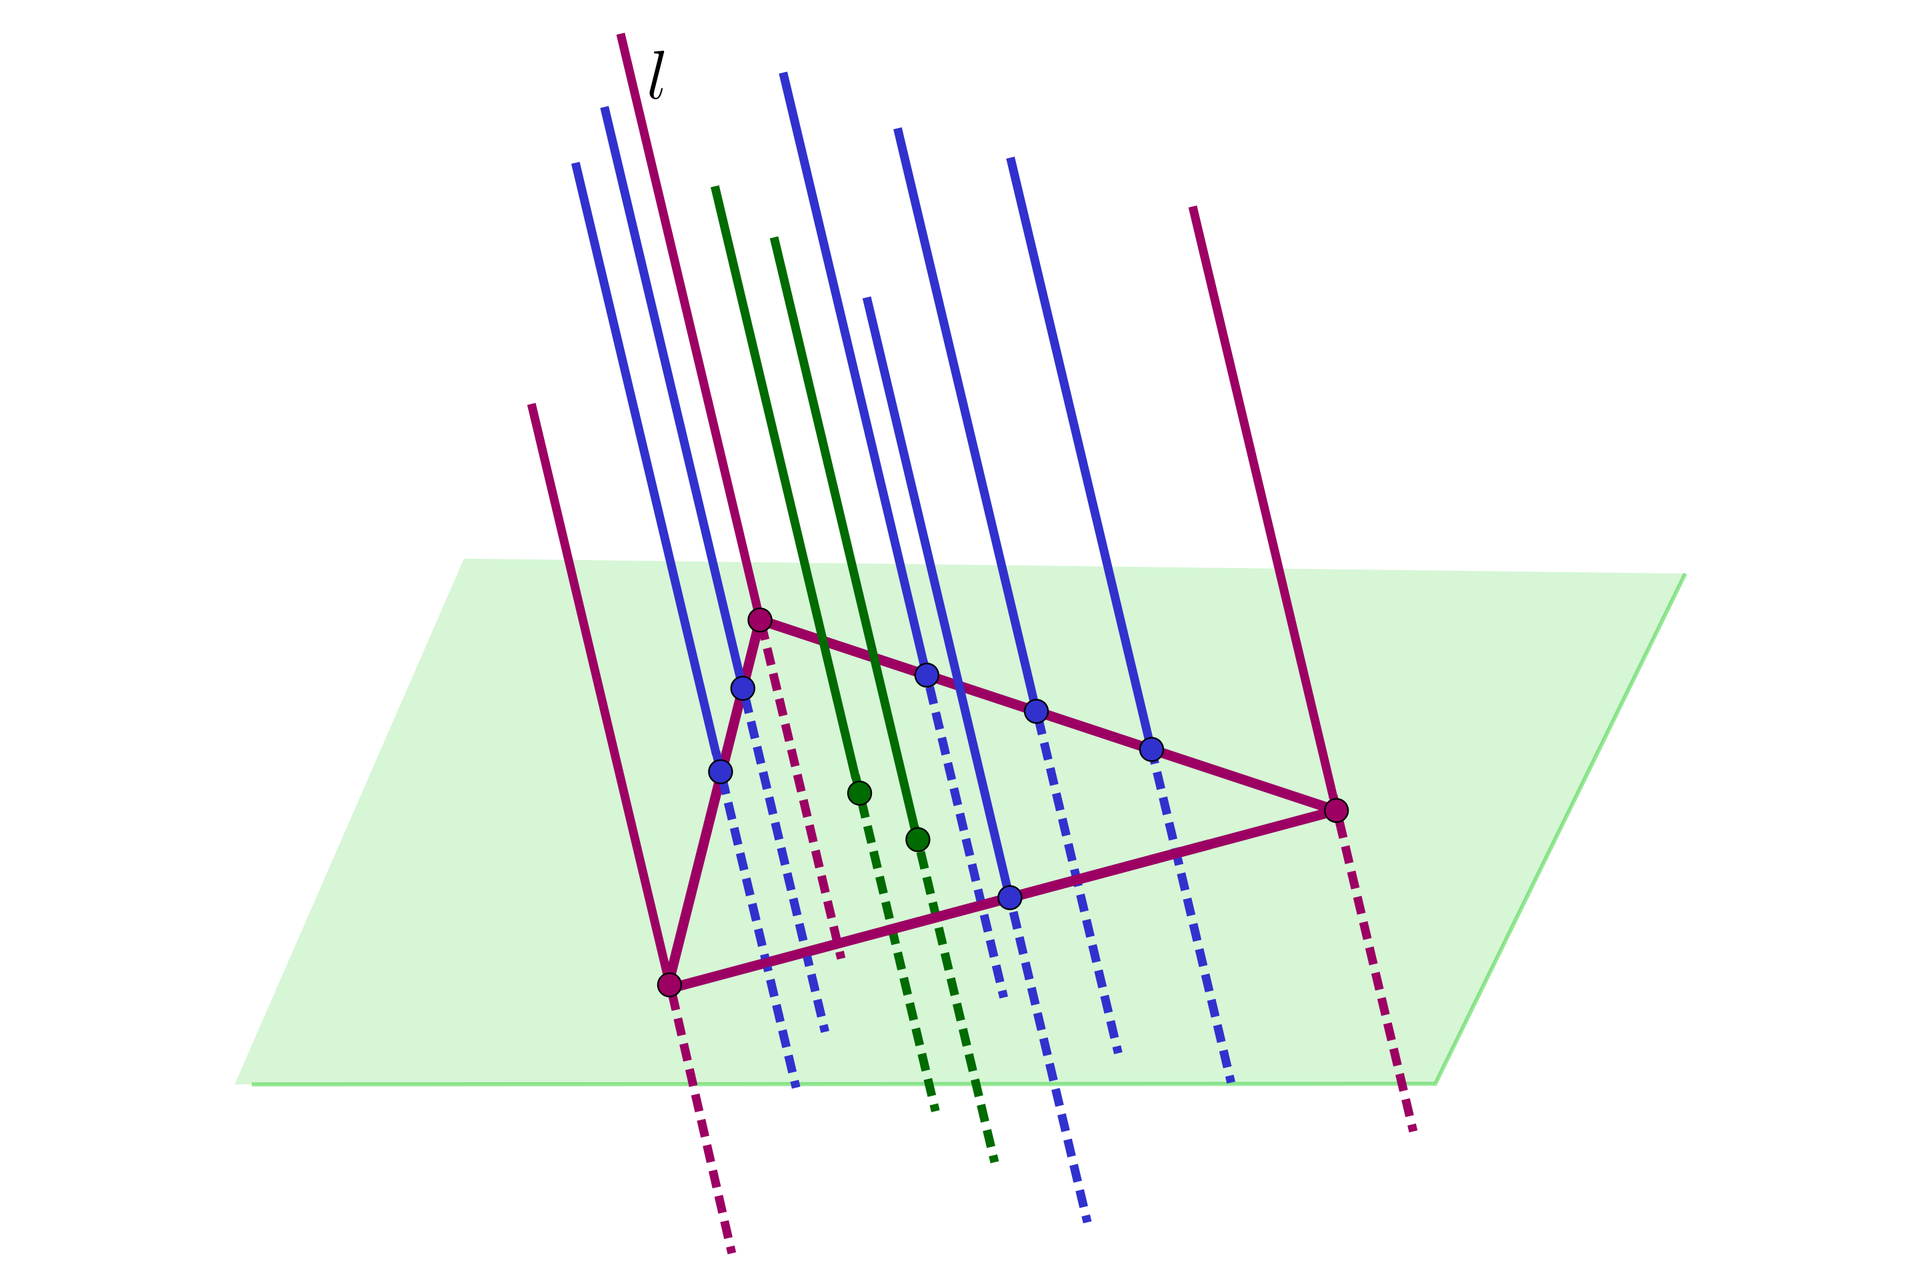 Ilustracja przedstawia płaszczyznę przez którą przechodzi  jedenaście równoległych do siebie prostych. Trzy proste zaznaczone kolorem fioletowym są wierzchołkami trójkąta, który został zaznaczony na płaszczyźnie, jedna z fioletowych prostych jest podpisana literą l. Sześć prostych zaznaczonych kolorem niebieskim przecinają płaszczyznę na bokach zaznaczonego trójkąta, a dwie zielone proste przecinają płaszczyznę wewnątrz trójkąta.